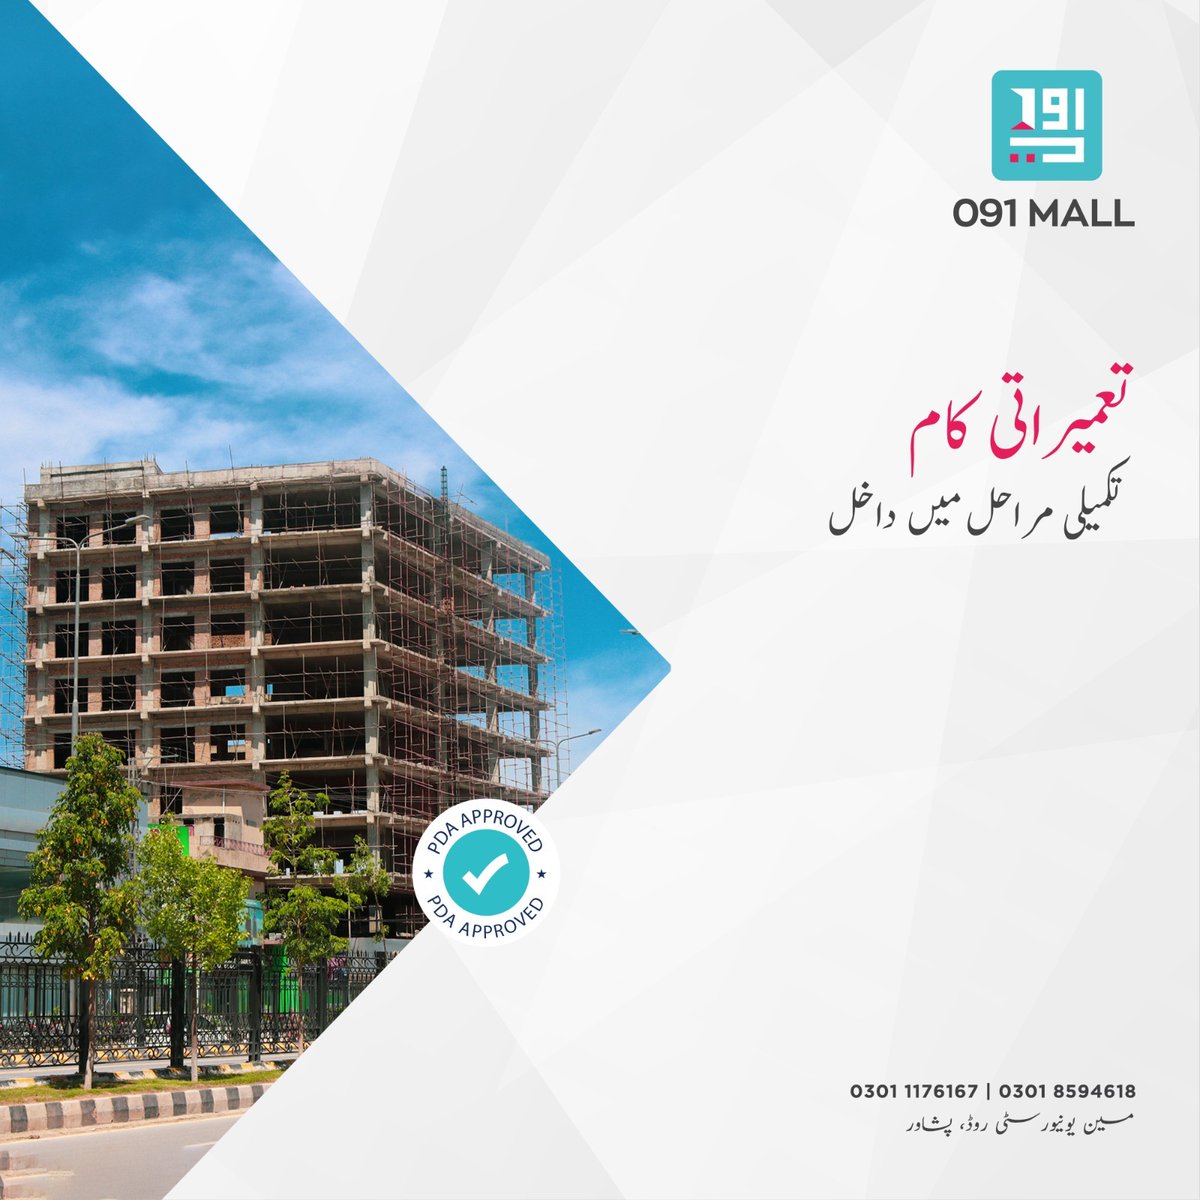 091 مال ،شہر پشاور میں کاروباری دنیا کو نئی پہچان فراہم کرتا ایک زبردست پراجیکٹ جس کا تعمیراتی کام برق رفتاری سے  تکمیلی مراحل میں داخل ہوچکا ہے۔ تو اب جلد ہی ملنے جارہا پشاور کے رہائشیوں کو شاپنگ کا نیا انداز۔

#091Mall #ShoppingMall #UniversityRoadPeshawar #peshawar #KPK